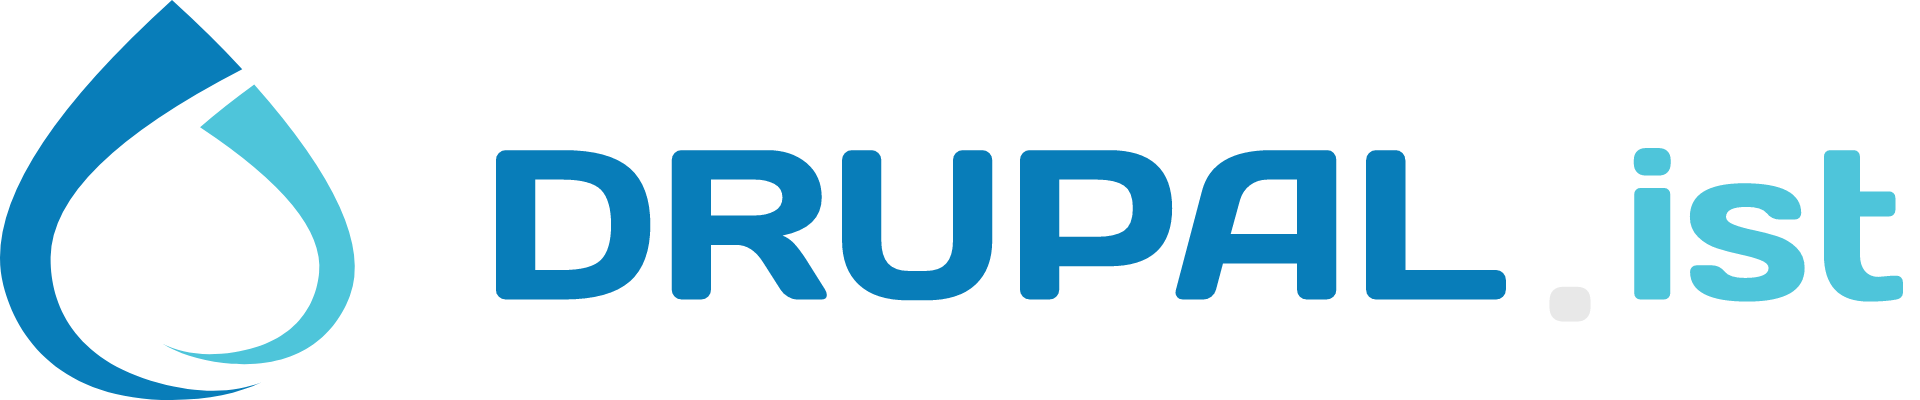 Drupal.ist logo